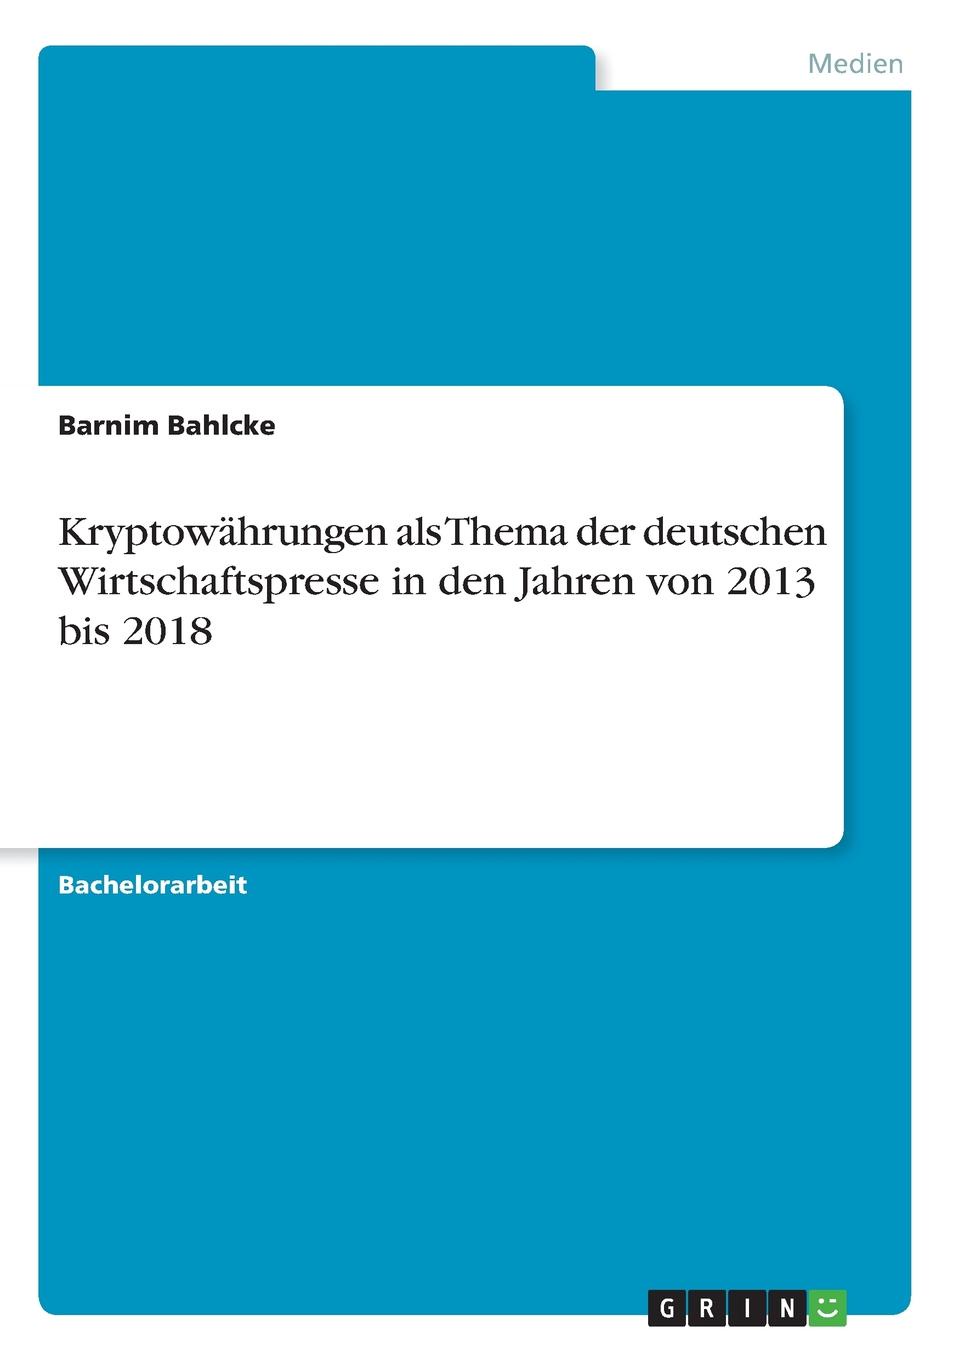 фото Kryptowahrungen als Thema der deutschen Wirtschaftspresse in den Jahren von 2013 bis 2018